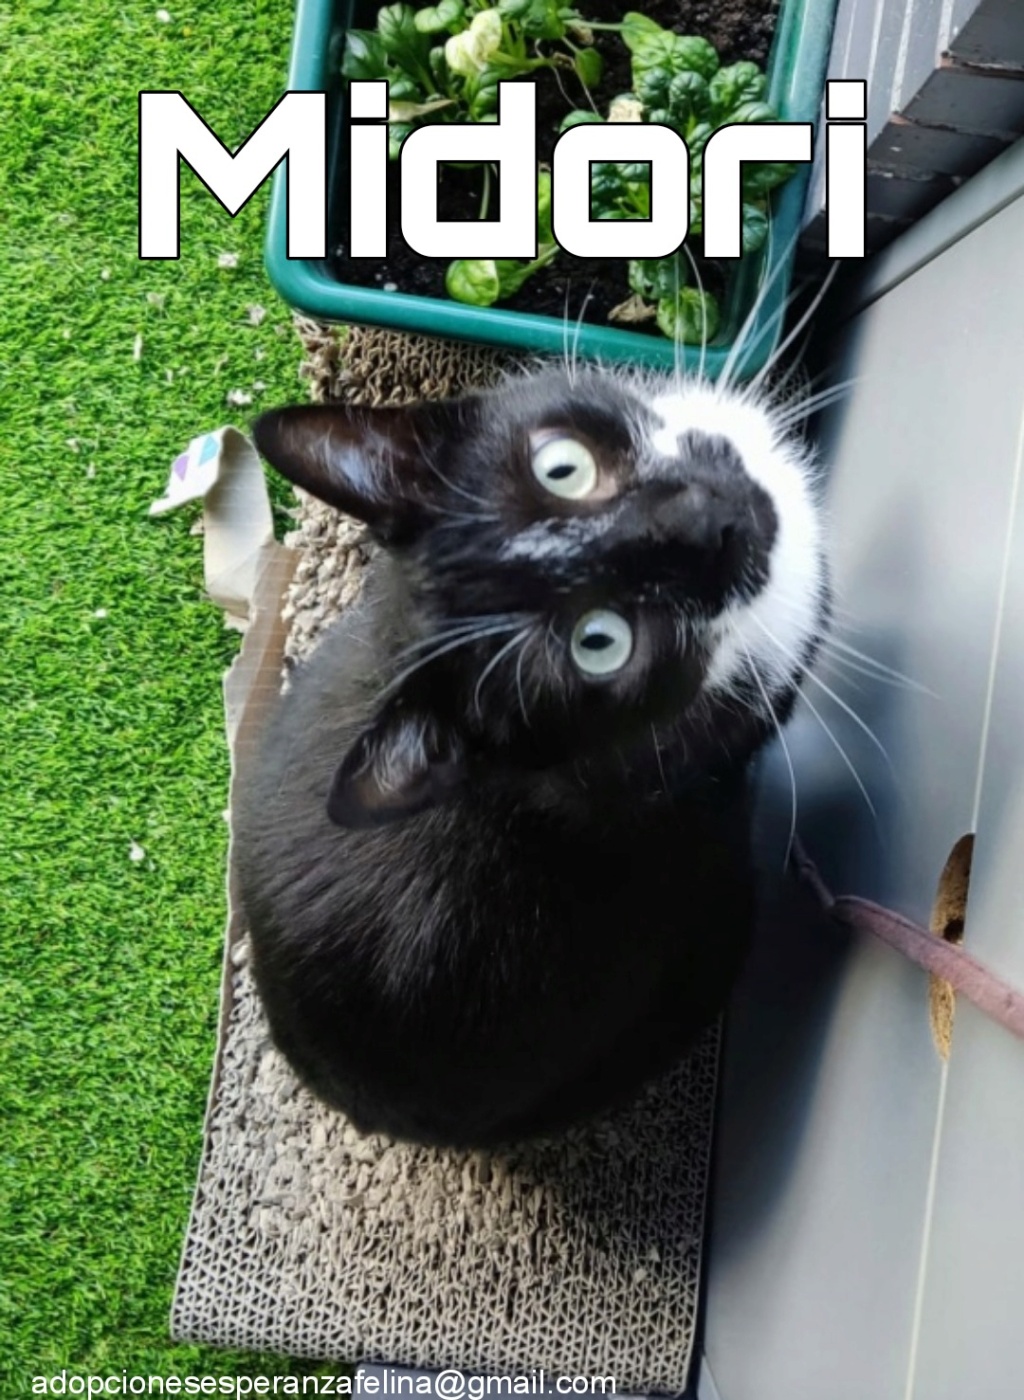 MIDORI, precioso gatito en adopción (F.Nac. 06/01/2017) - Página 3 Picsar10